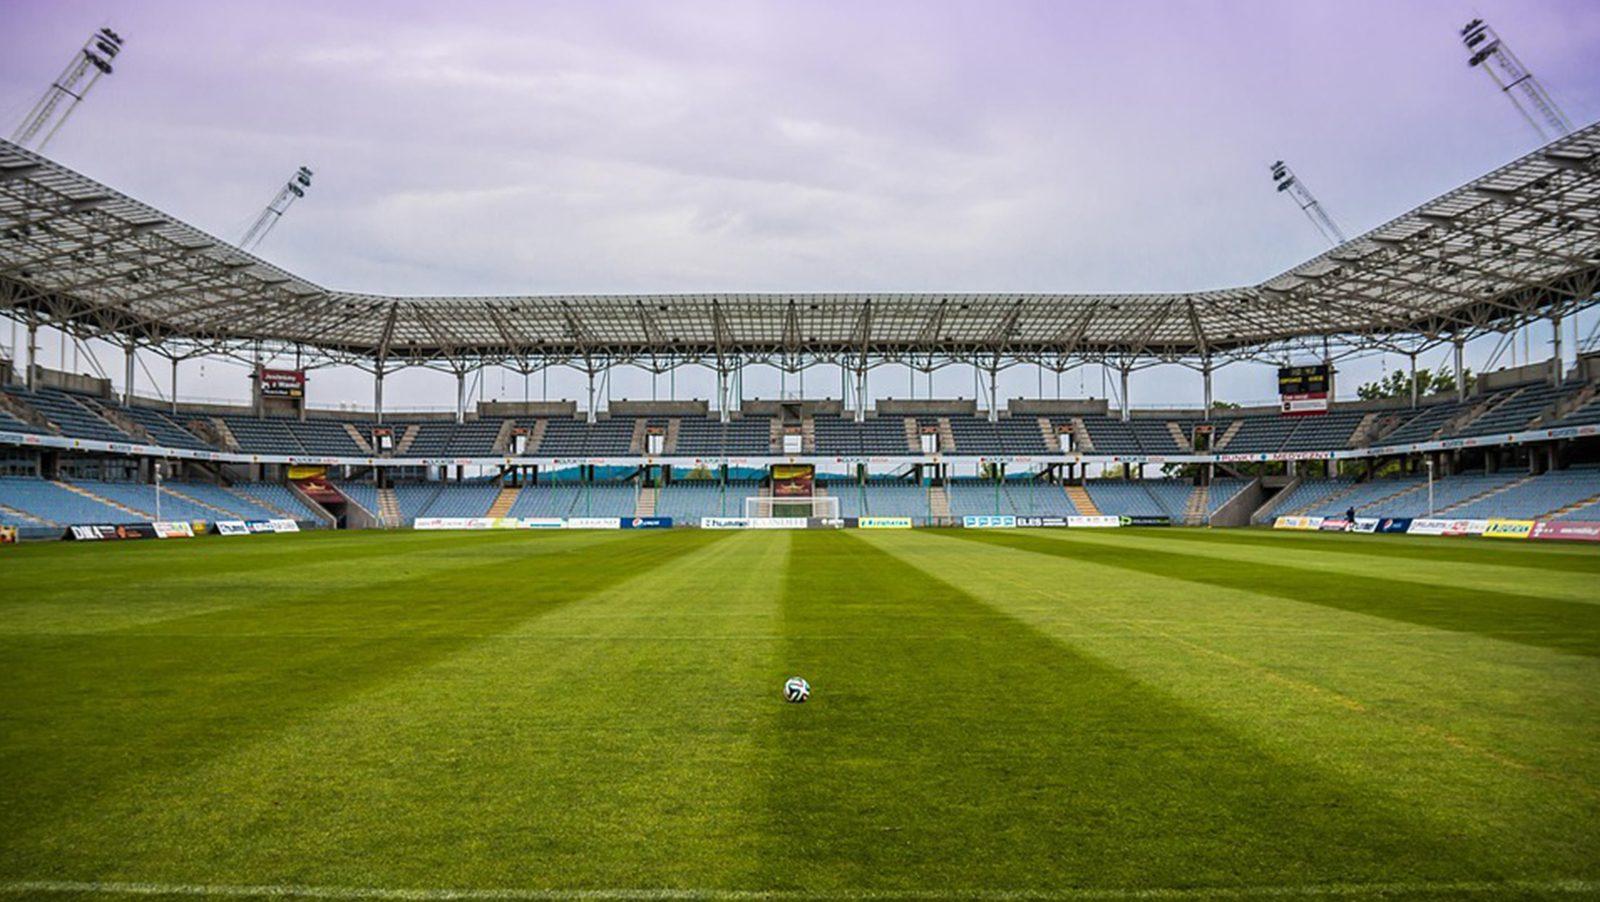 UEFA wants help combatting match-fixing